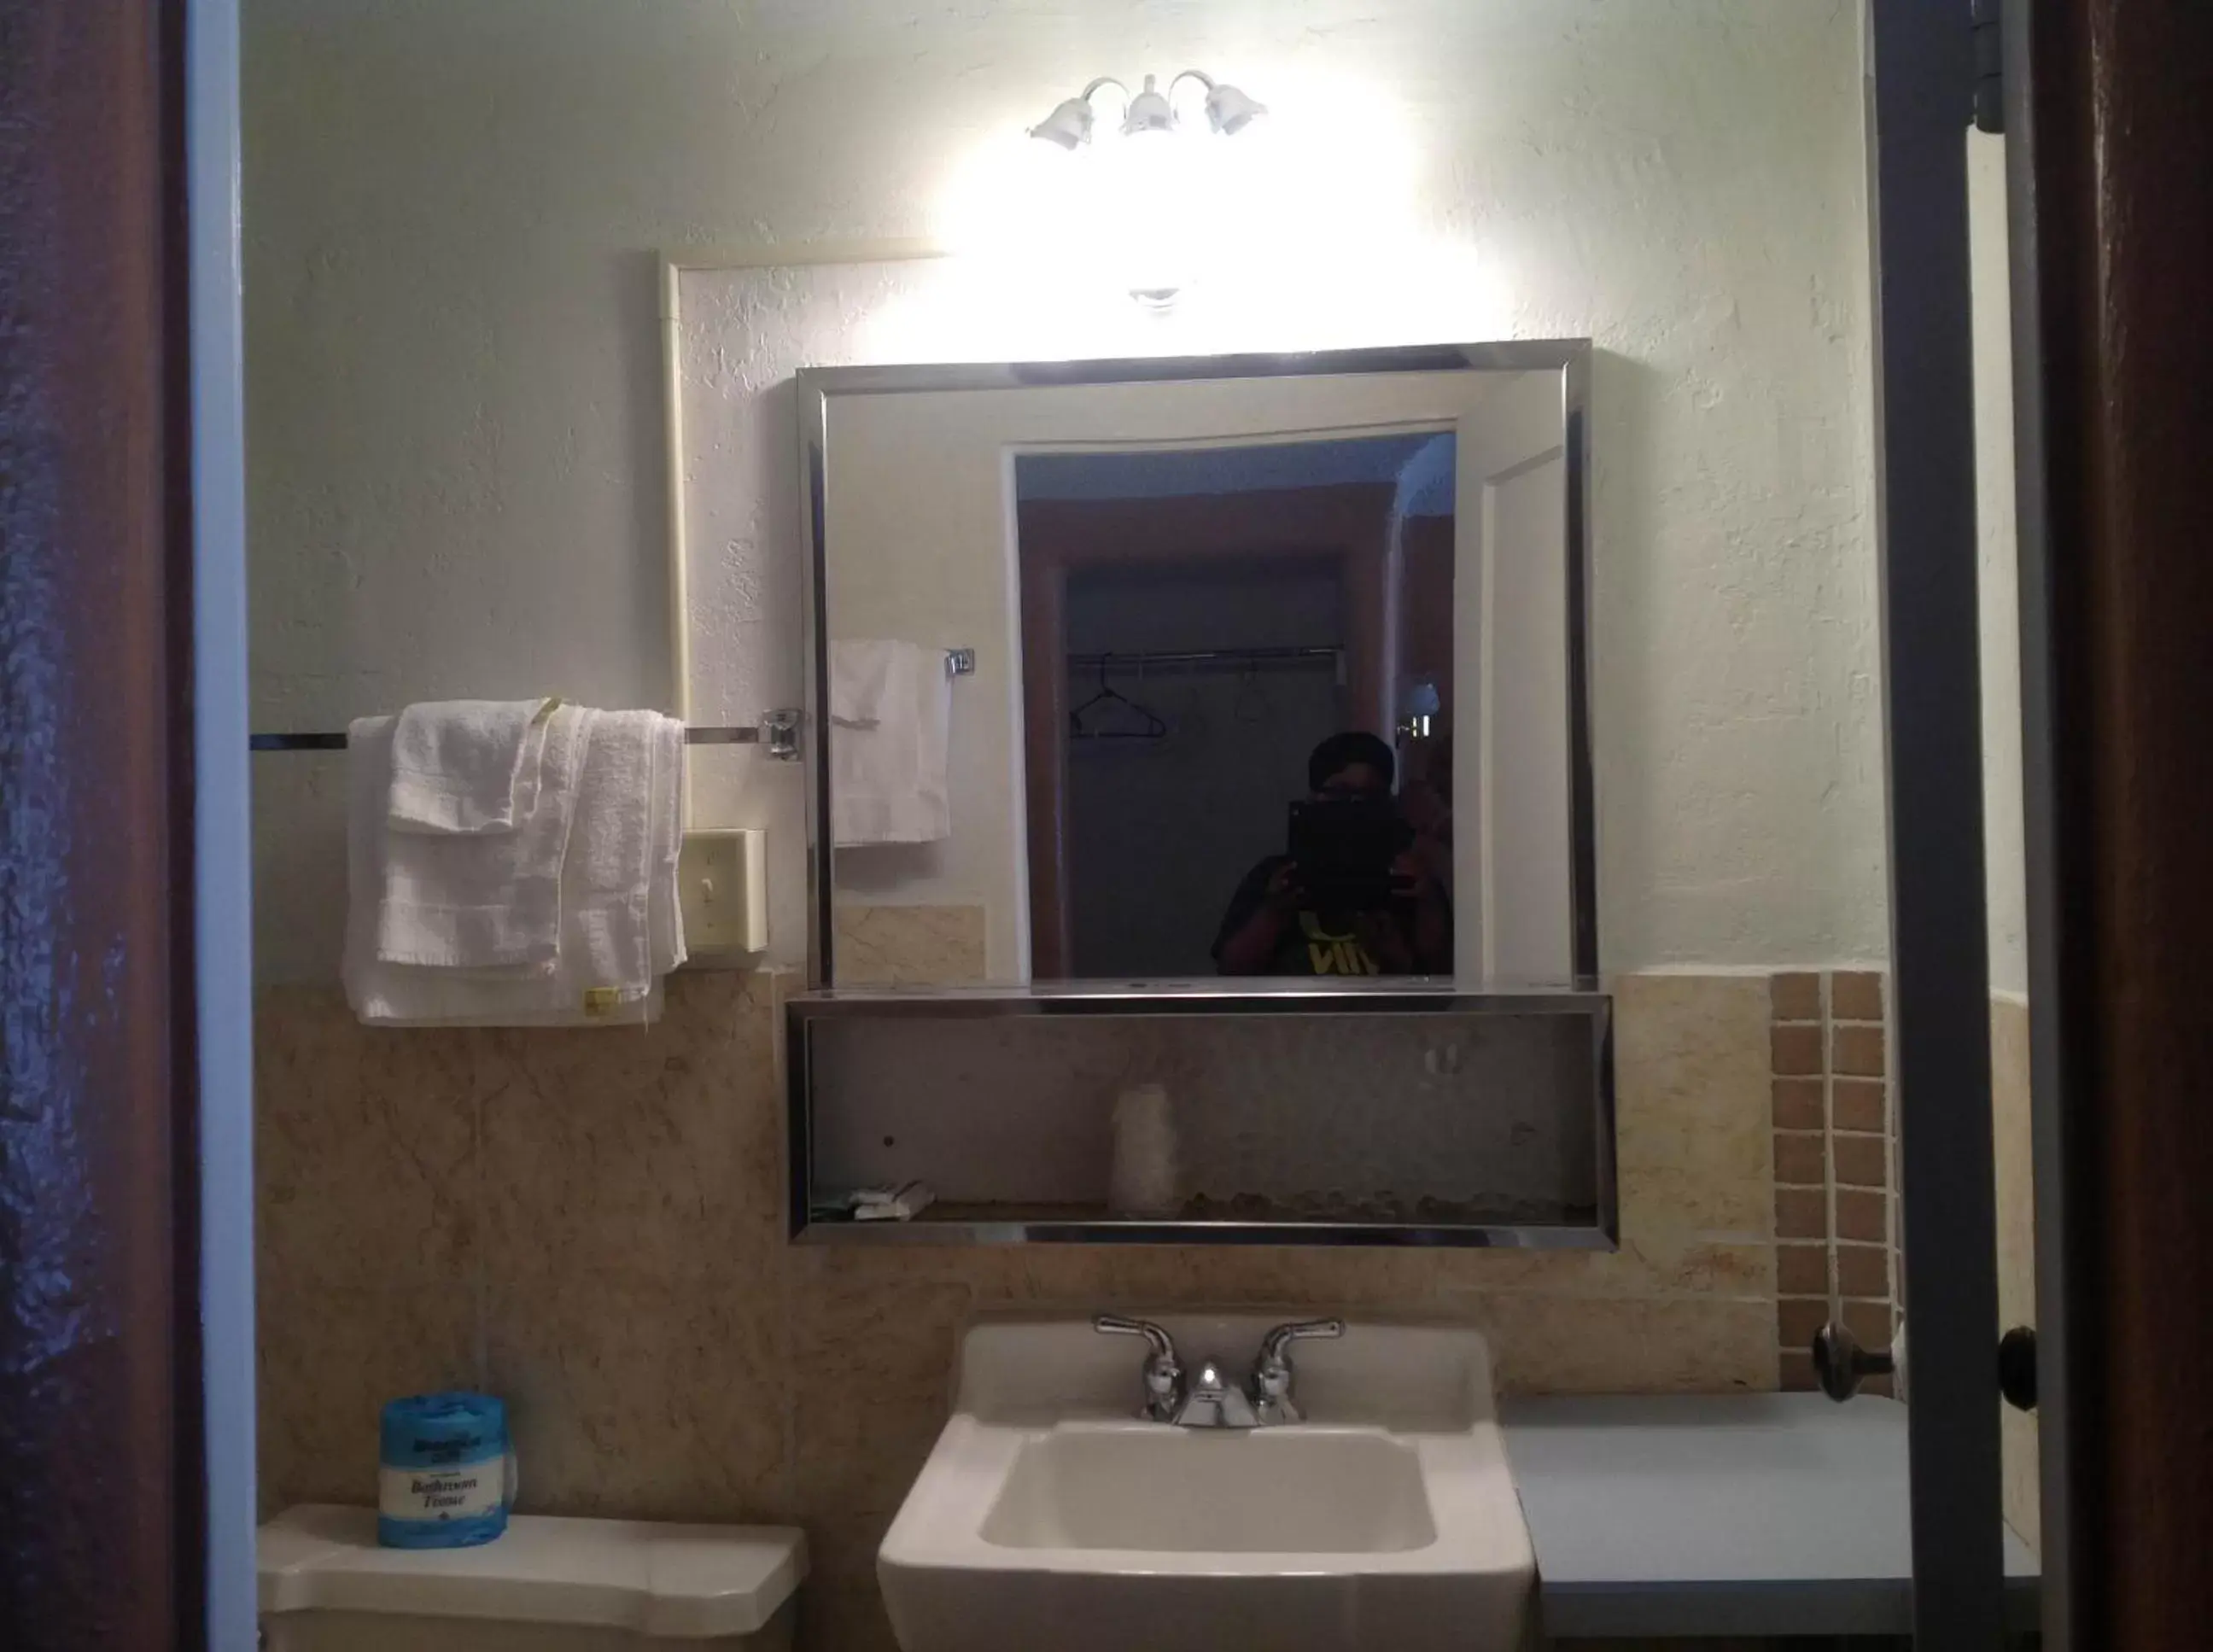 Bathroom in Budget Inn Motel Chemult